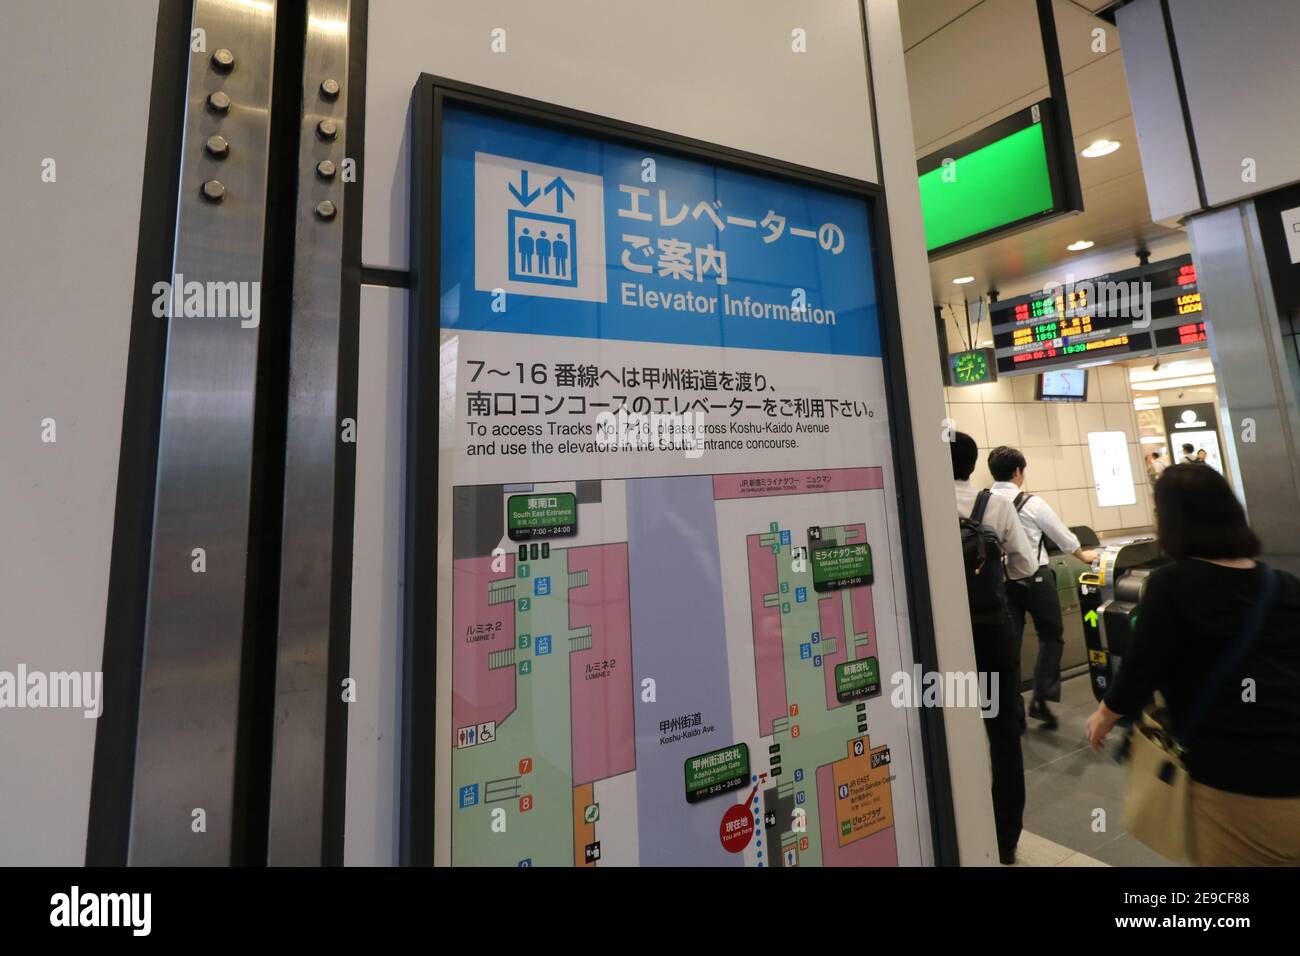 Elevator information sign in Shinjuku, Tokyo, Japan Stock Photo